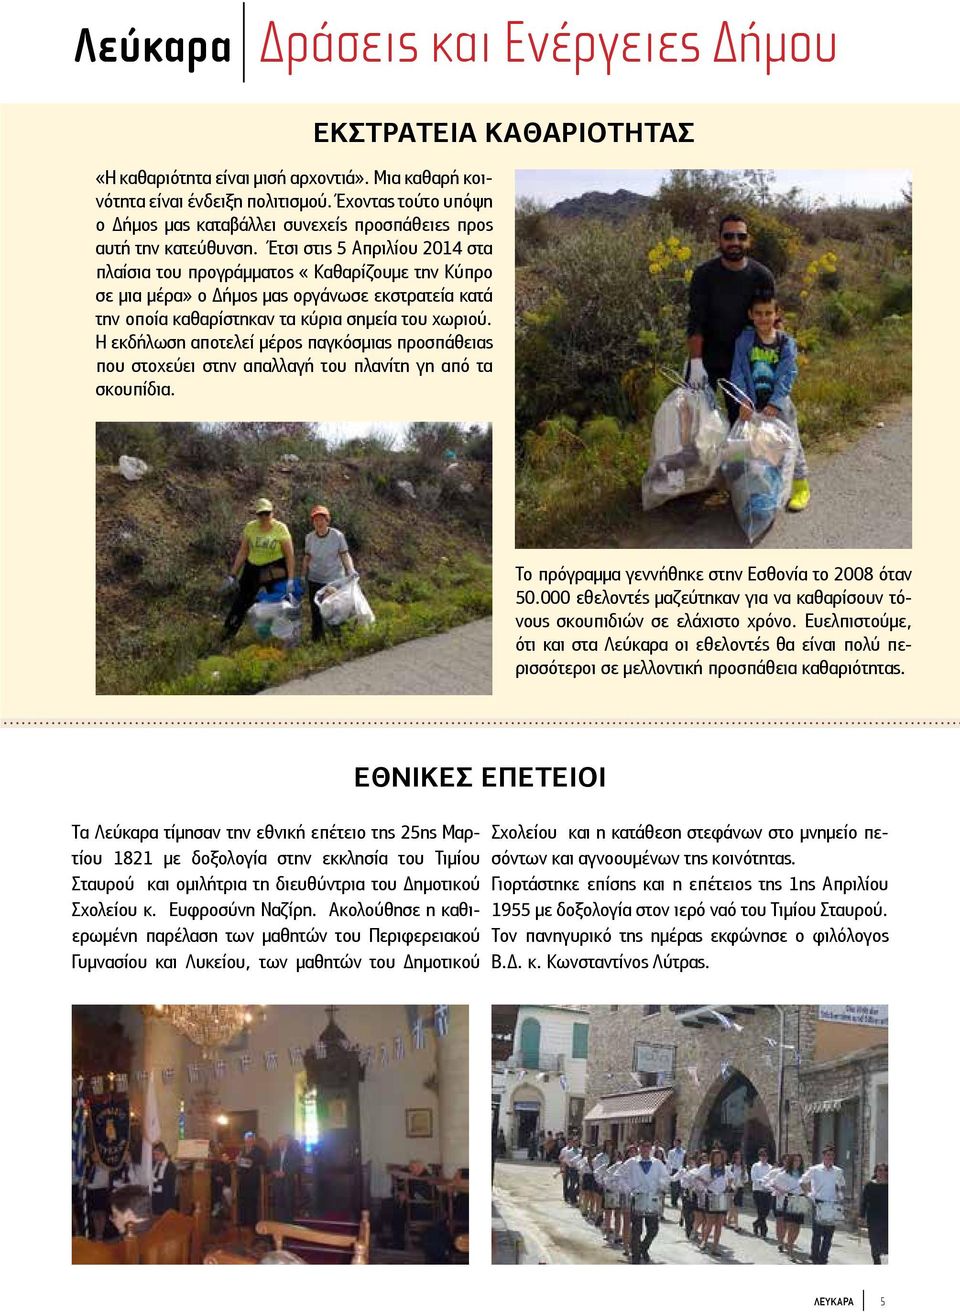 Έτσι στις 5 Απριλίου 2014 στα πλαίσια του προγράμματος «Καθαρίζουμε την Κύπρο σε μια μέρα» ο Δήμος μας οργάνωσε εκστρατεία κατά την οποία καθαρίστηκαν τα κύρια σημεία του χωριού.